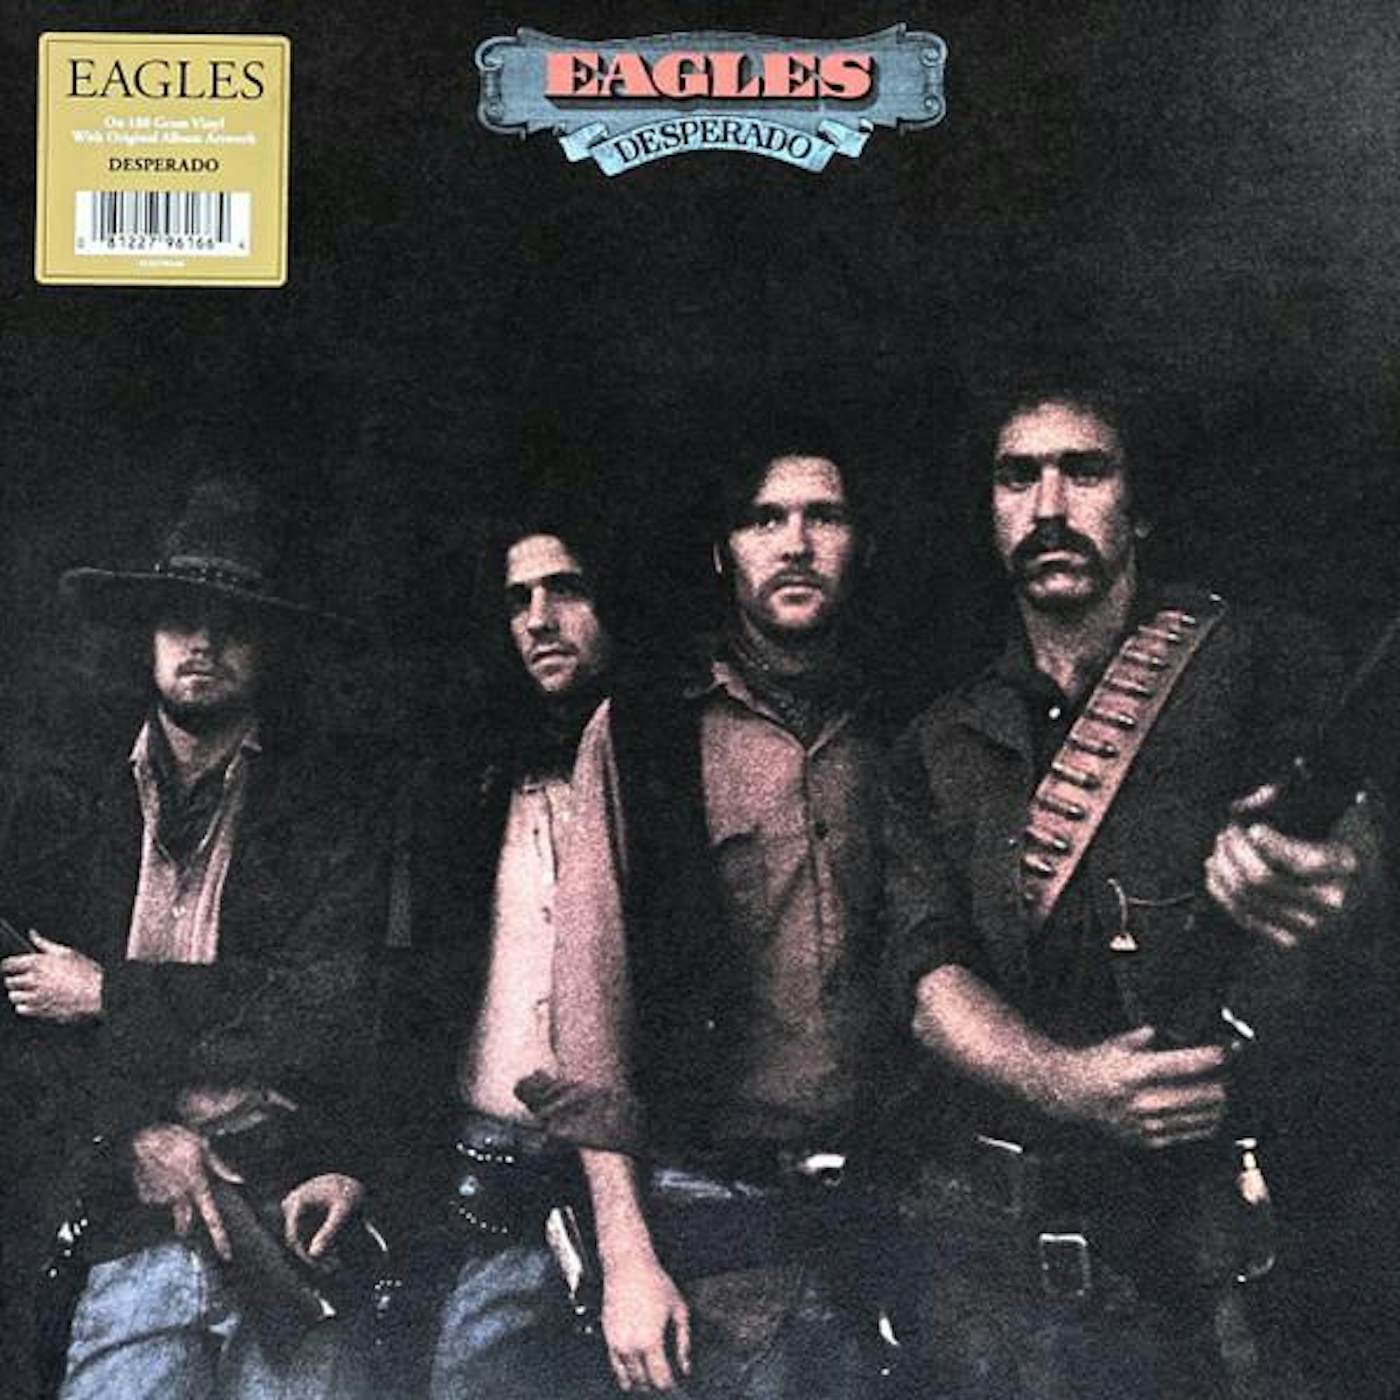 Eagles DESPERADO Vinyl Record